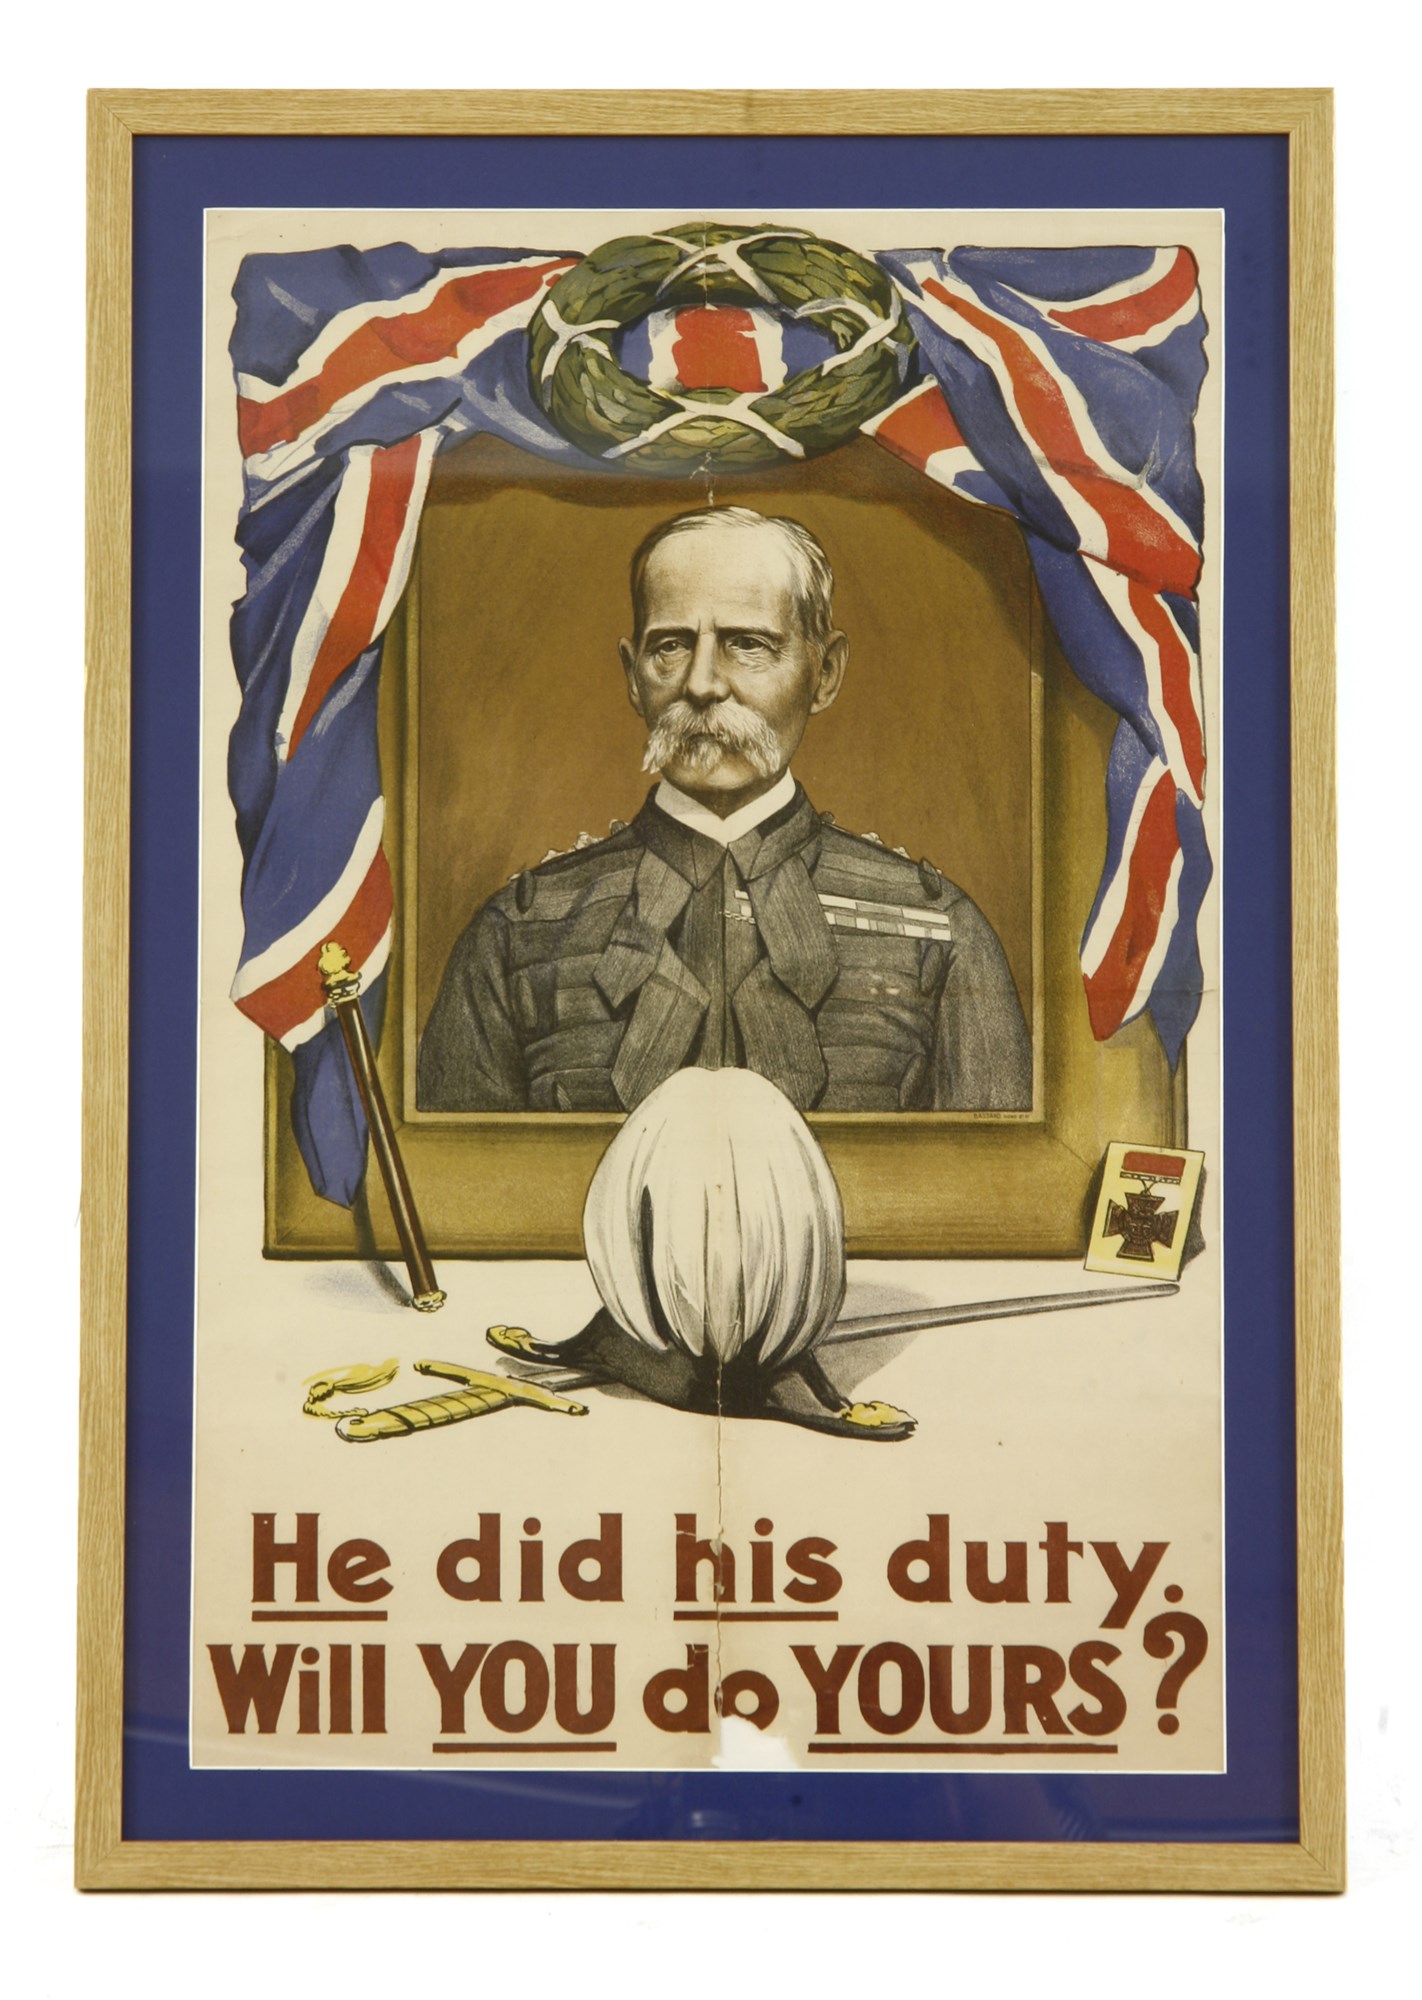 Lot 487 - A First World War recruitment poster